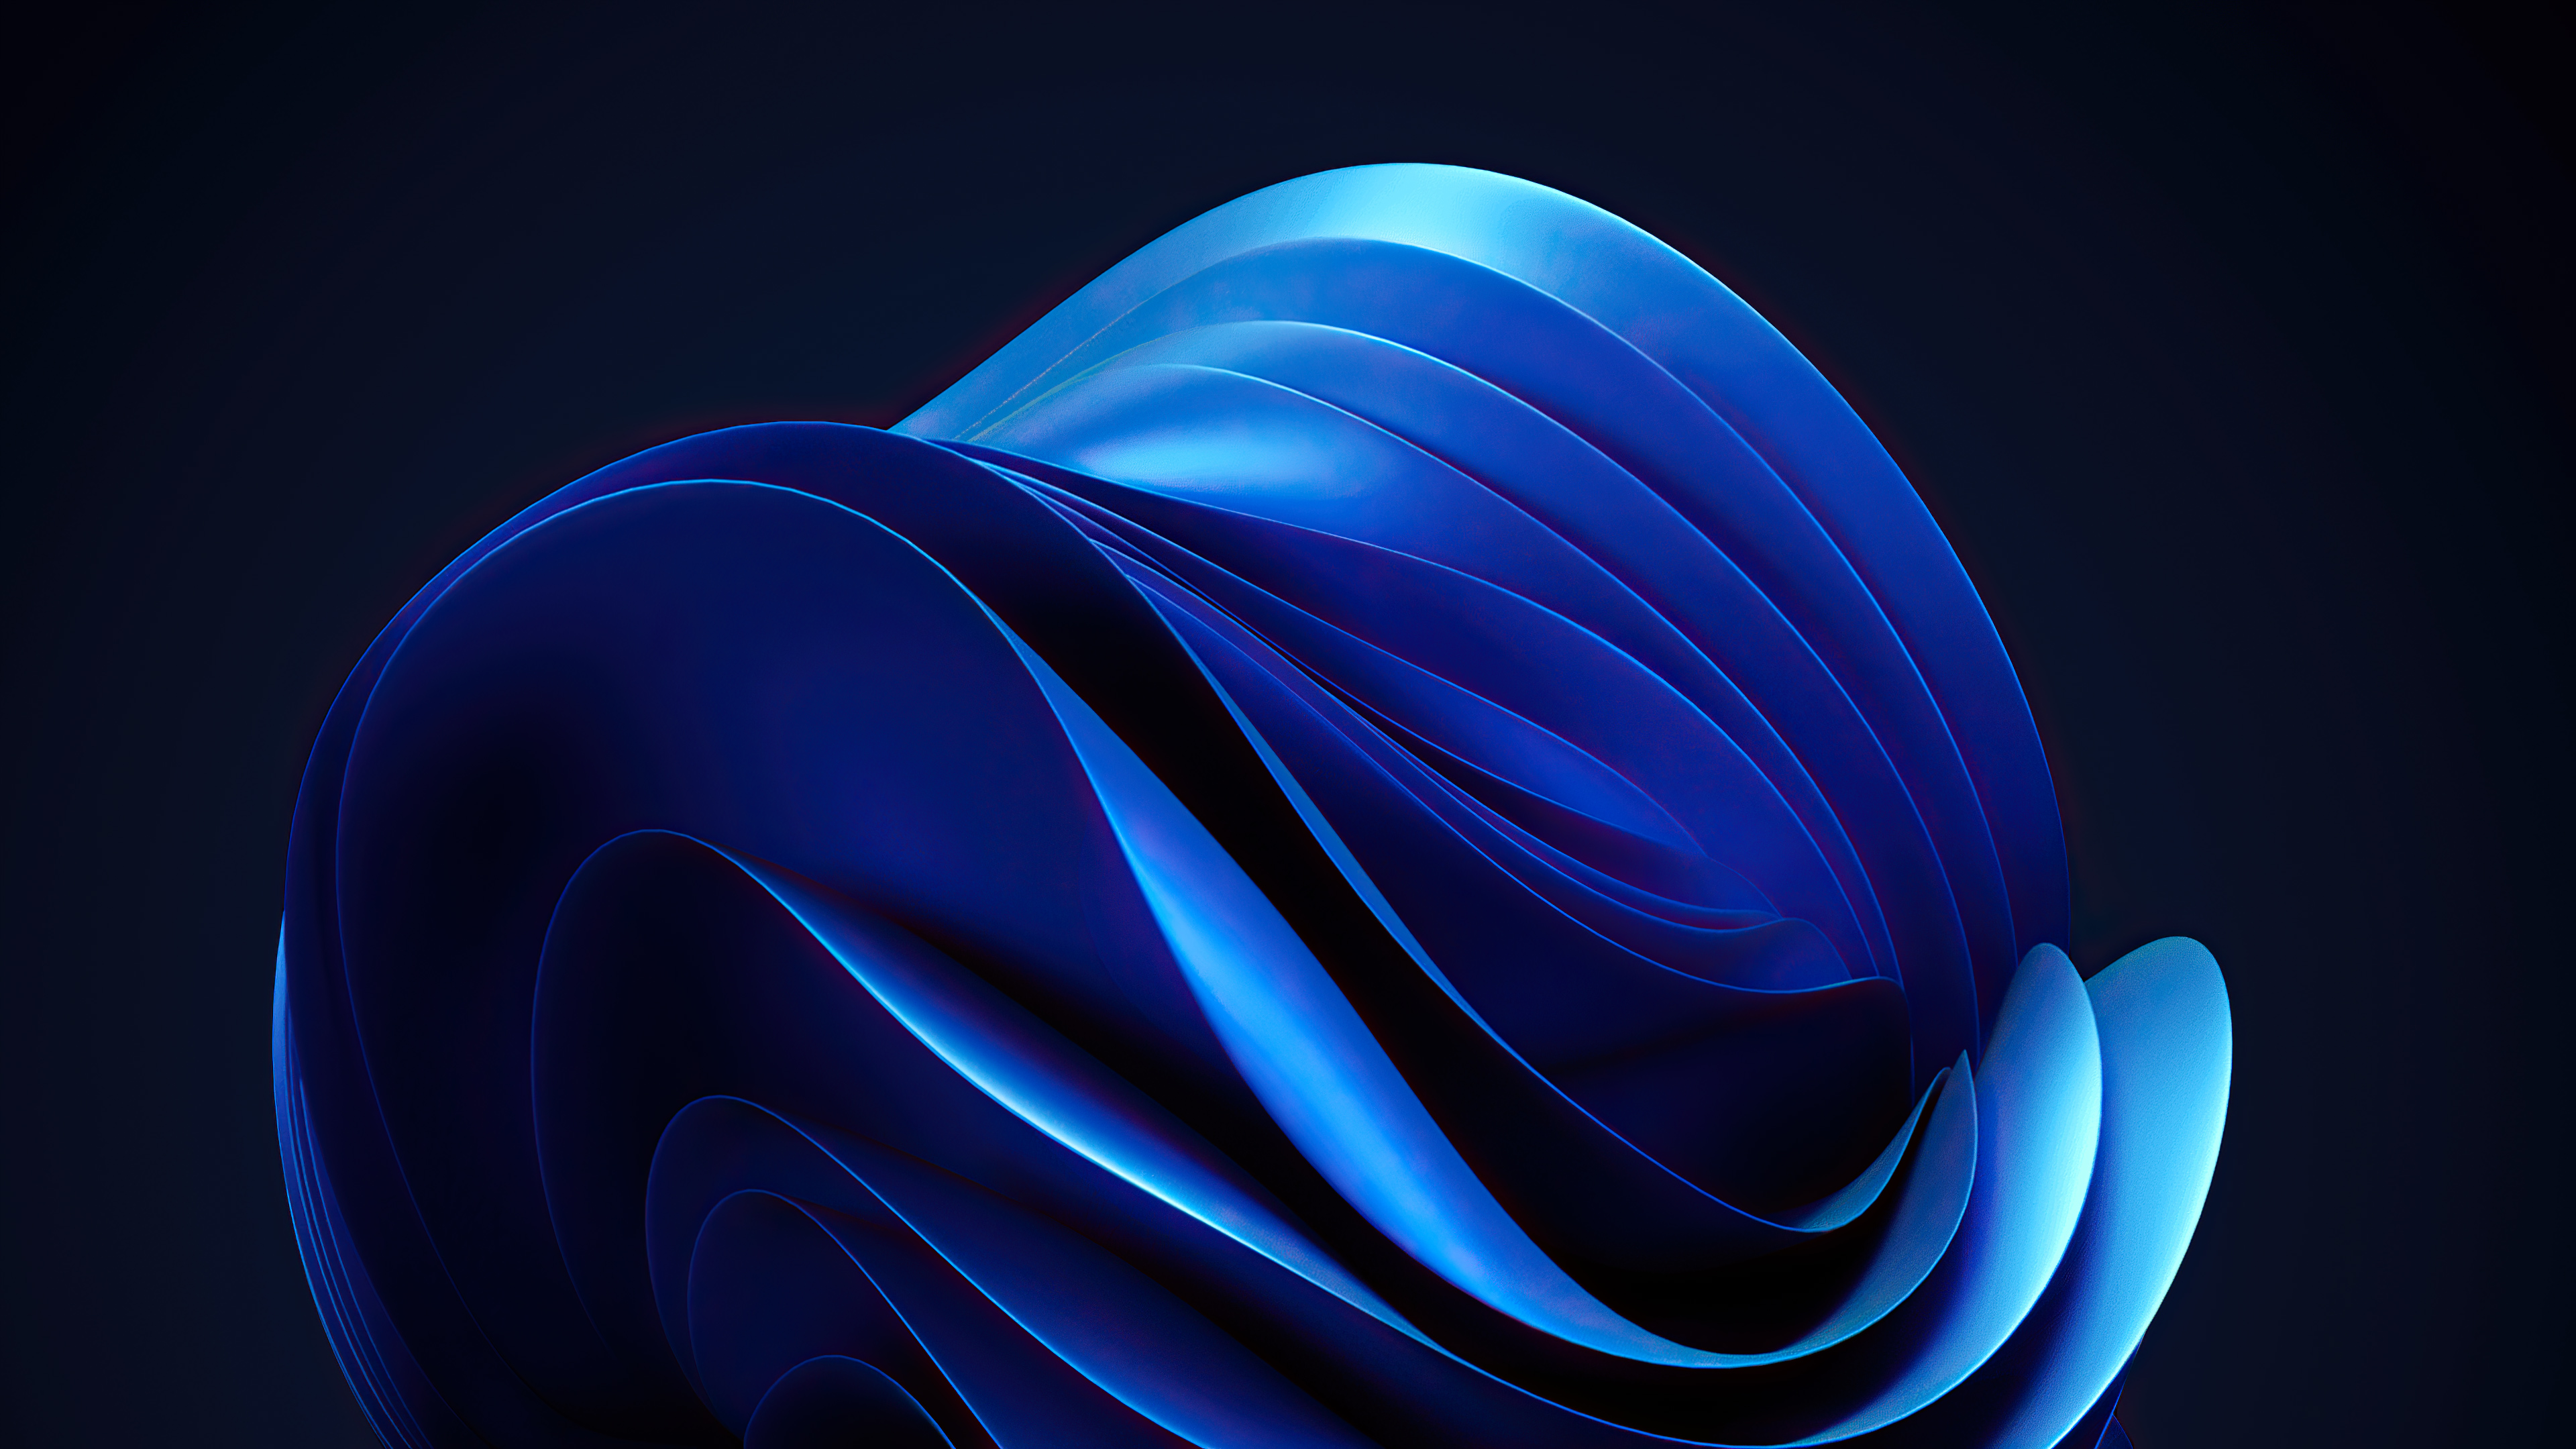 Windows 11 Wallpaper 4K, Blue background, Dark background, Abstract